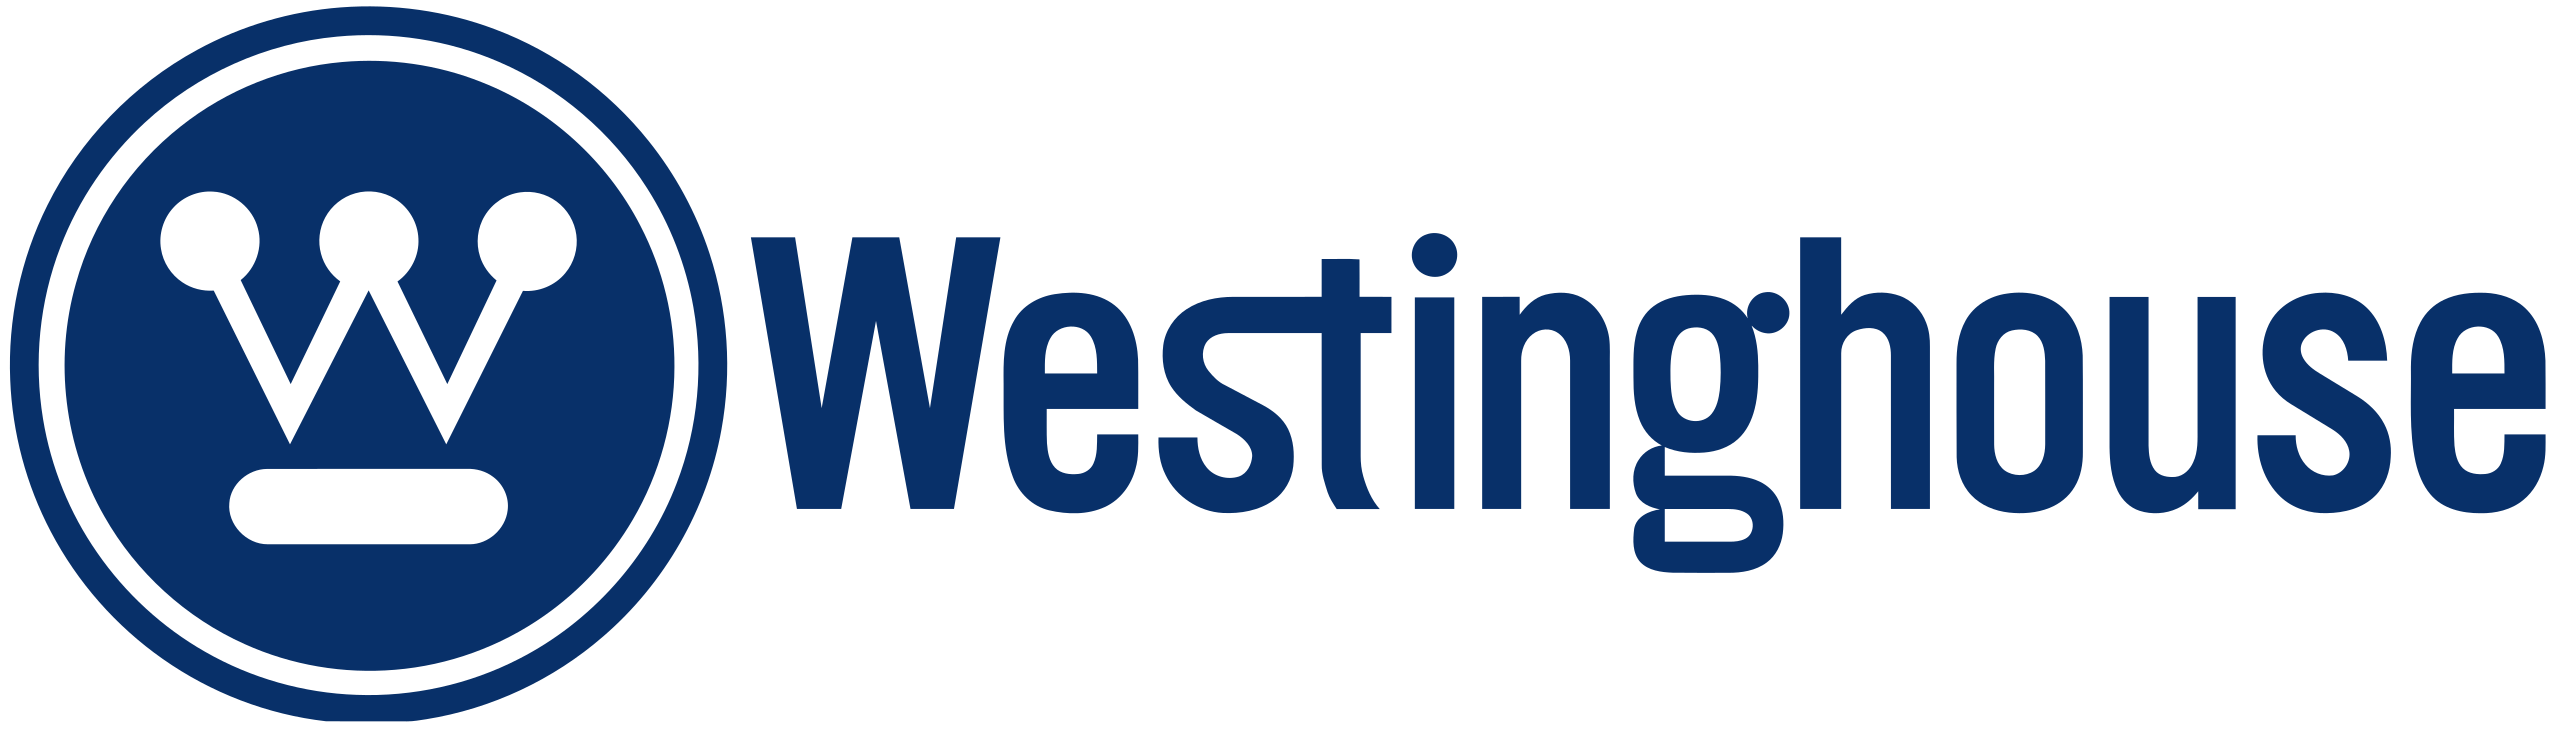 Westinghouse_logo